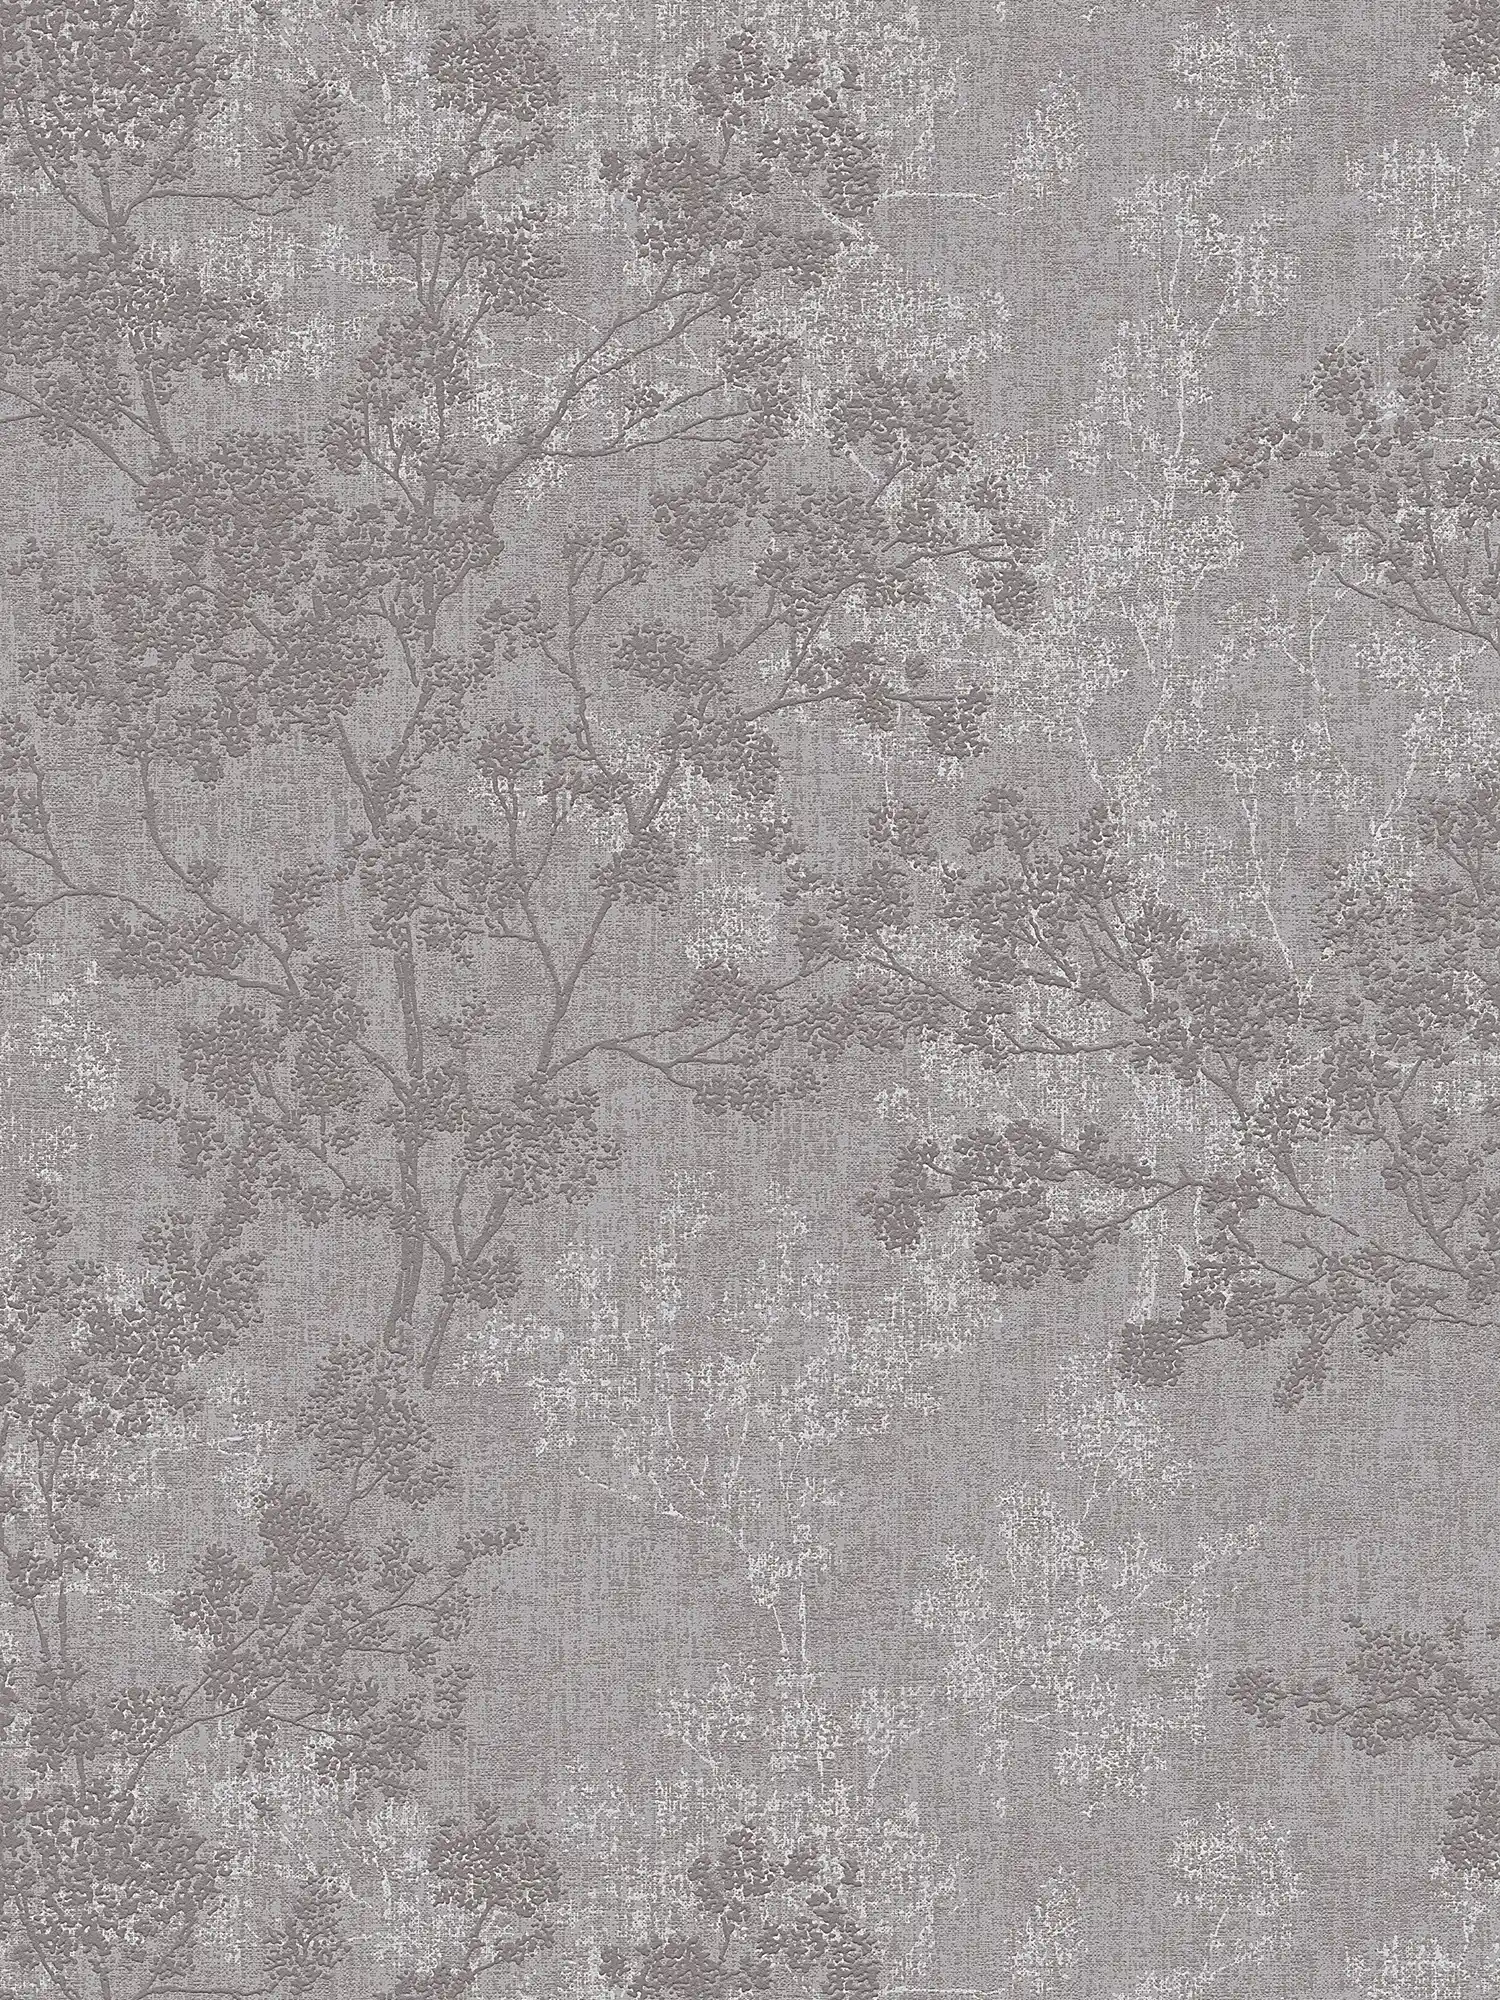 papel pintado con hojas en aspecto de lino - gris, marrón
